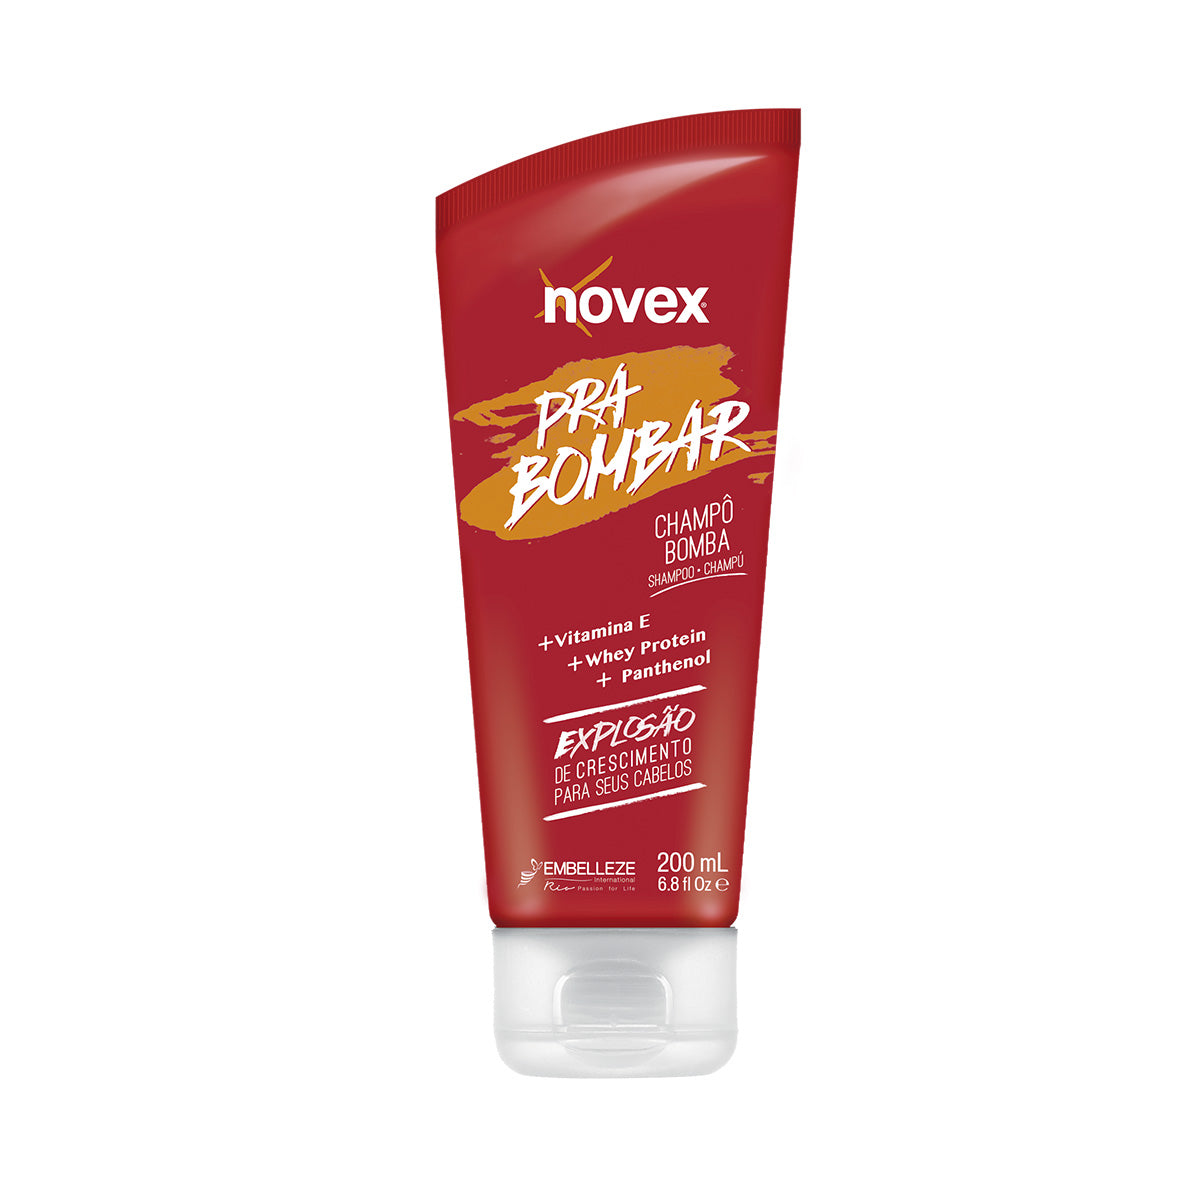 巴西 Novex能量洗髮水 Novex Pra Bomba Shampoo 200mL